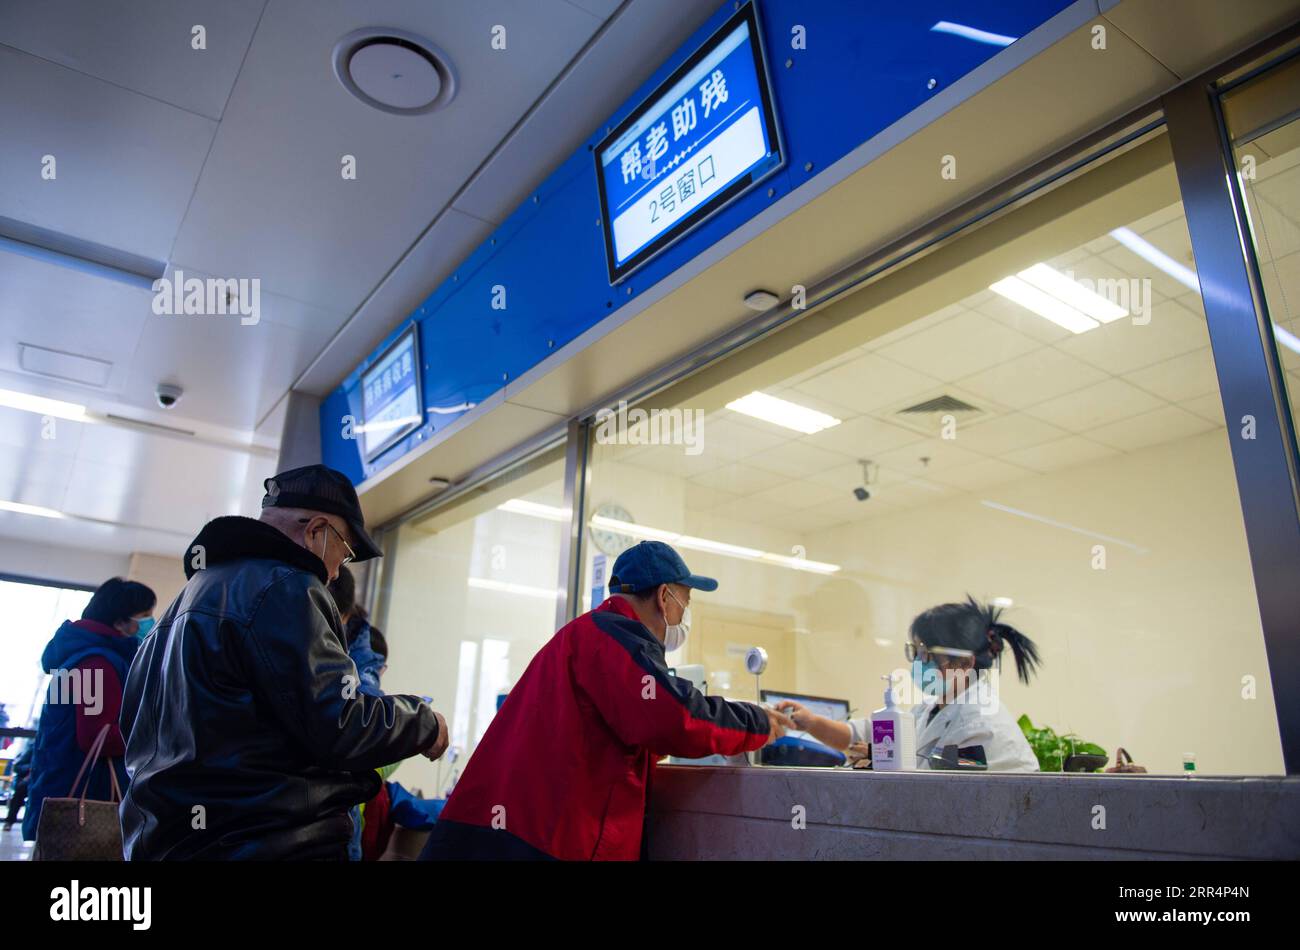 201210 -- PEKING, 10. Dezember 2020 -- Senioren vereinbaren Termine und bezahlen die Krankenhausrechnungen an einem Schreibtisch, der älteren und behinderten Menschen gewidmet ist, im Tiantan-Krankenhaus von Peking unter der Capital Medical University in Peking, Hauptstadt von China, 9. Dezember 2020. China hat eine dreijährige Kampagne gestartet, um den Senioren des Landes dabei zu helfen, die digitale Kluft zu überwinden und die Entwicklung intelligenter Technologien zu genießen. Die Regierung hat vor kurzem einen Plan mit Maßnahmen vorgelegt, die älteren Menschen dabei helfen sollen, Hindernisse für die Nutzung intelligenter Technologien zu überwinden und gleichzeitig die traditionellen Dienste für sie aufrechtzuerhalten. Der Plan Stockfoto